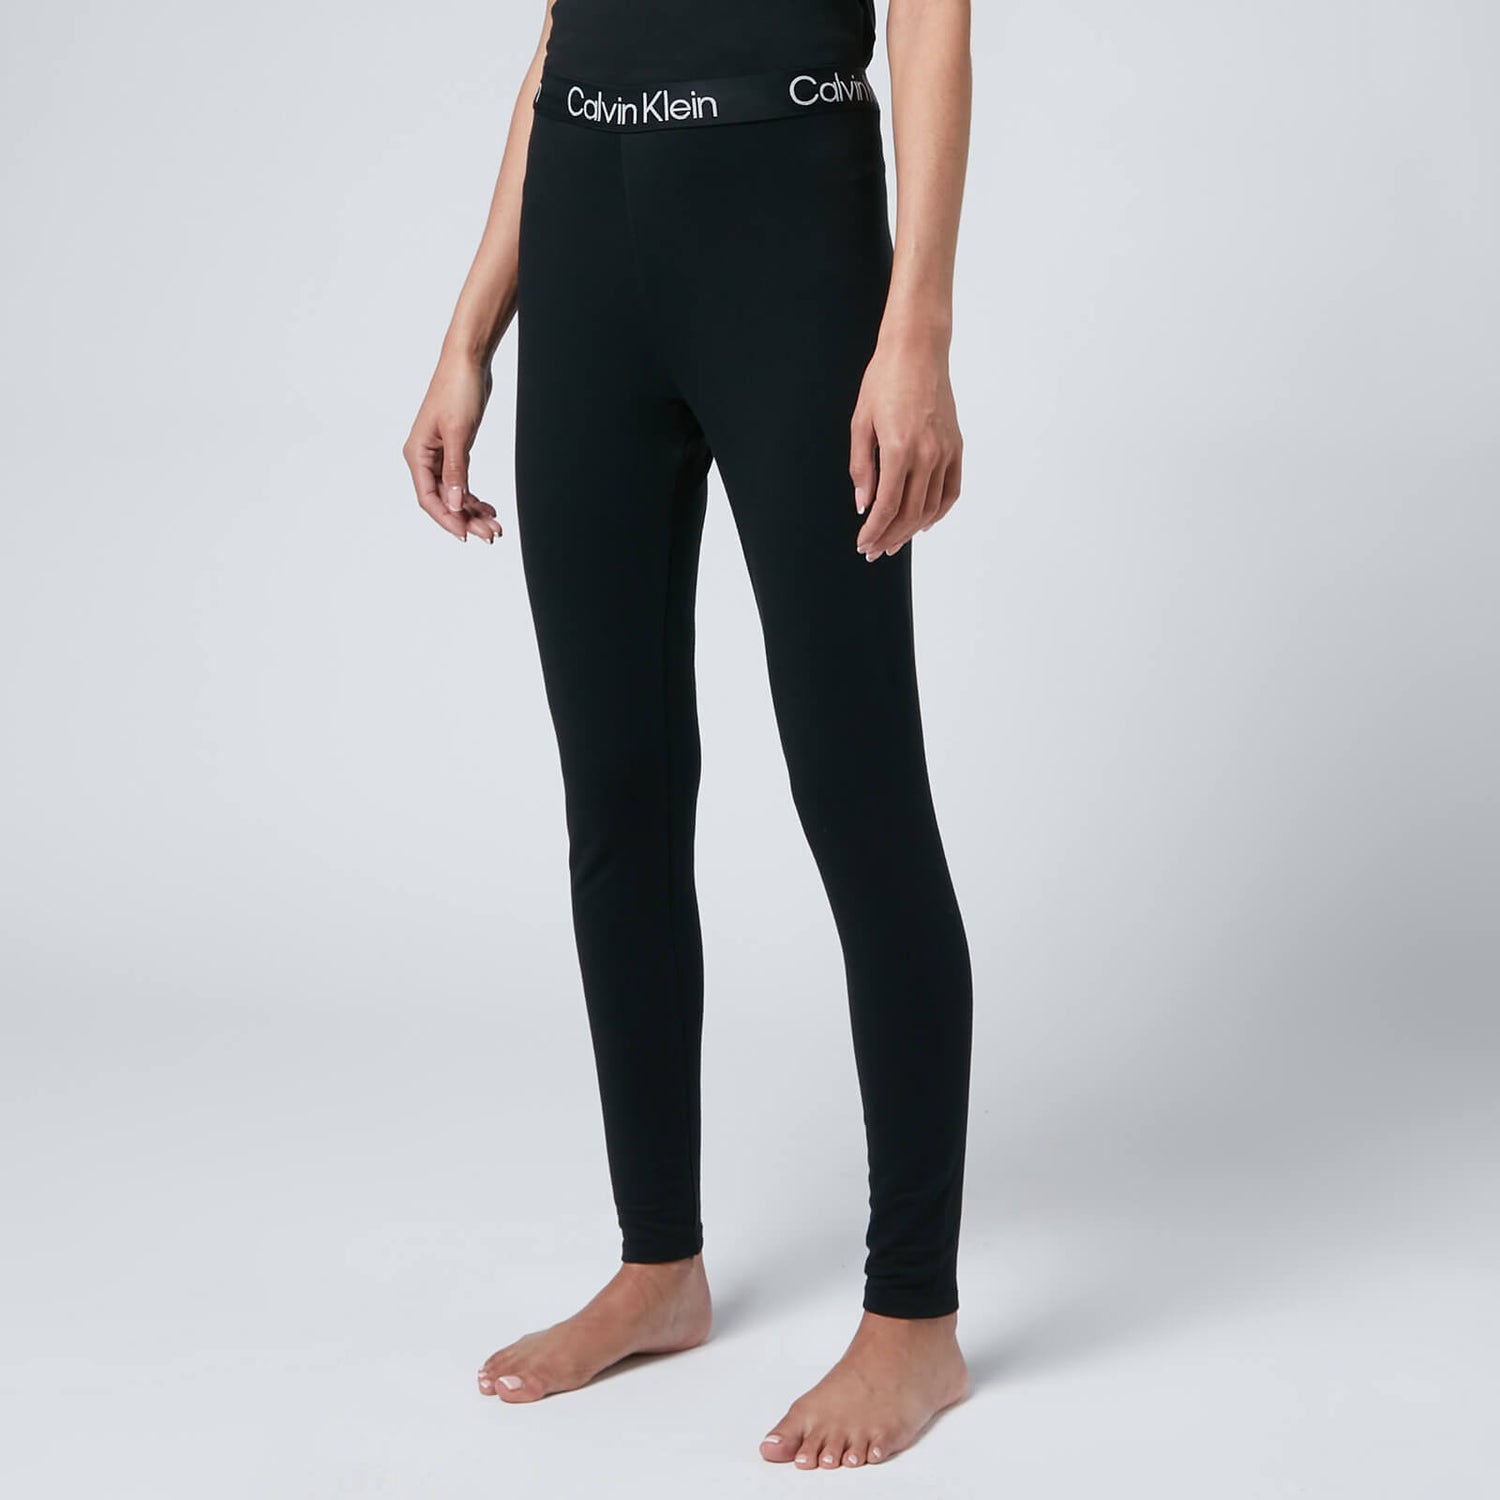 Calvin Klein Women's Logo Waistband Leggings - Black - S